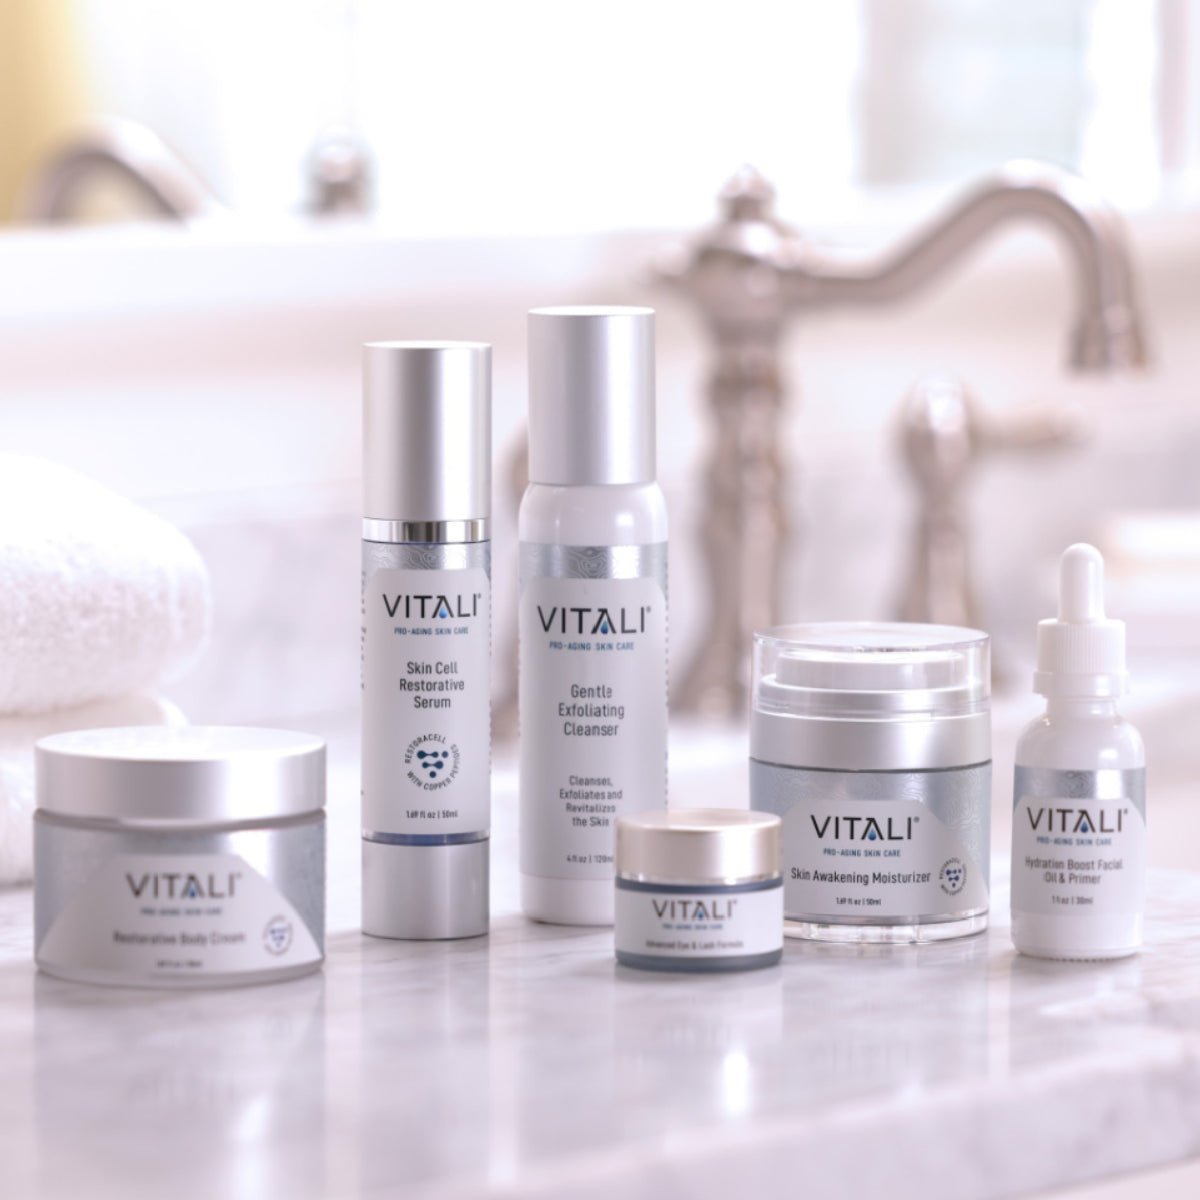 Vitali Full Skin Care Routine Collection - Restoracell Skincare